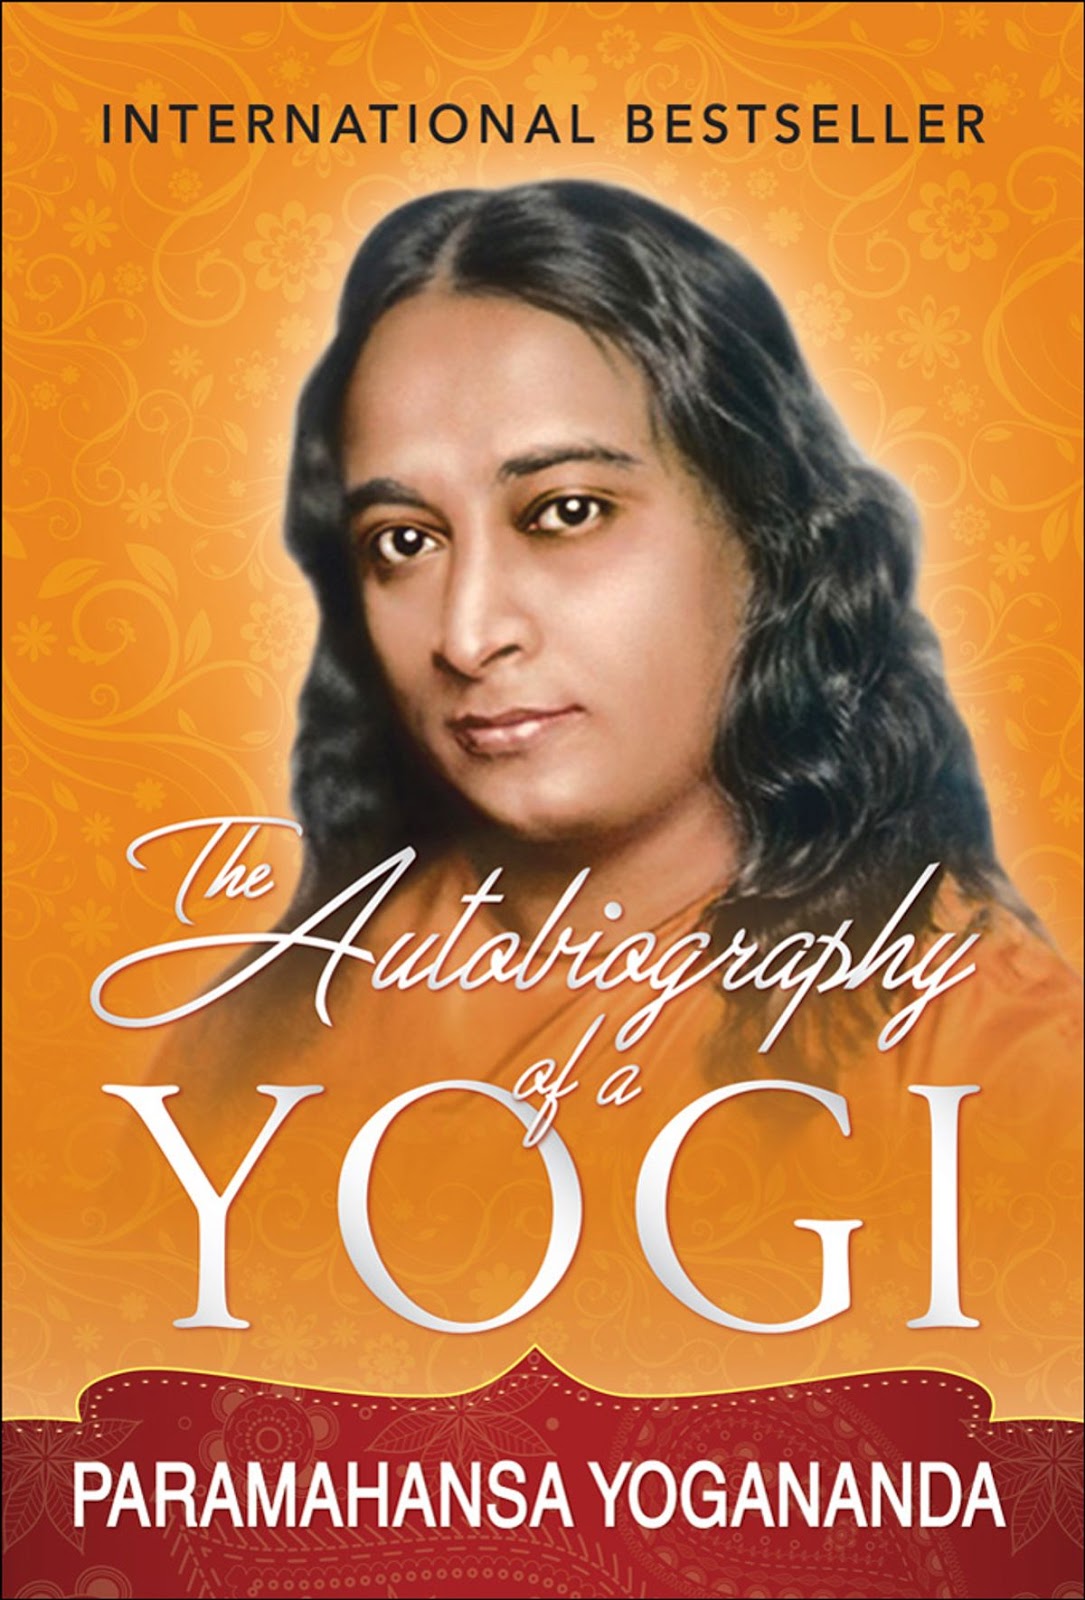 autobiography of yogi wikipedia